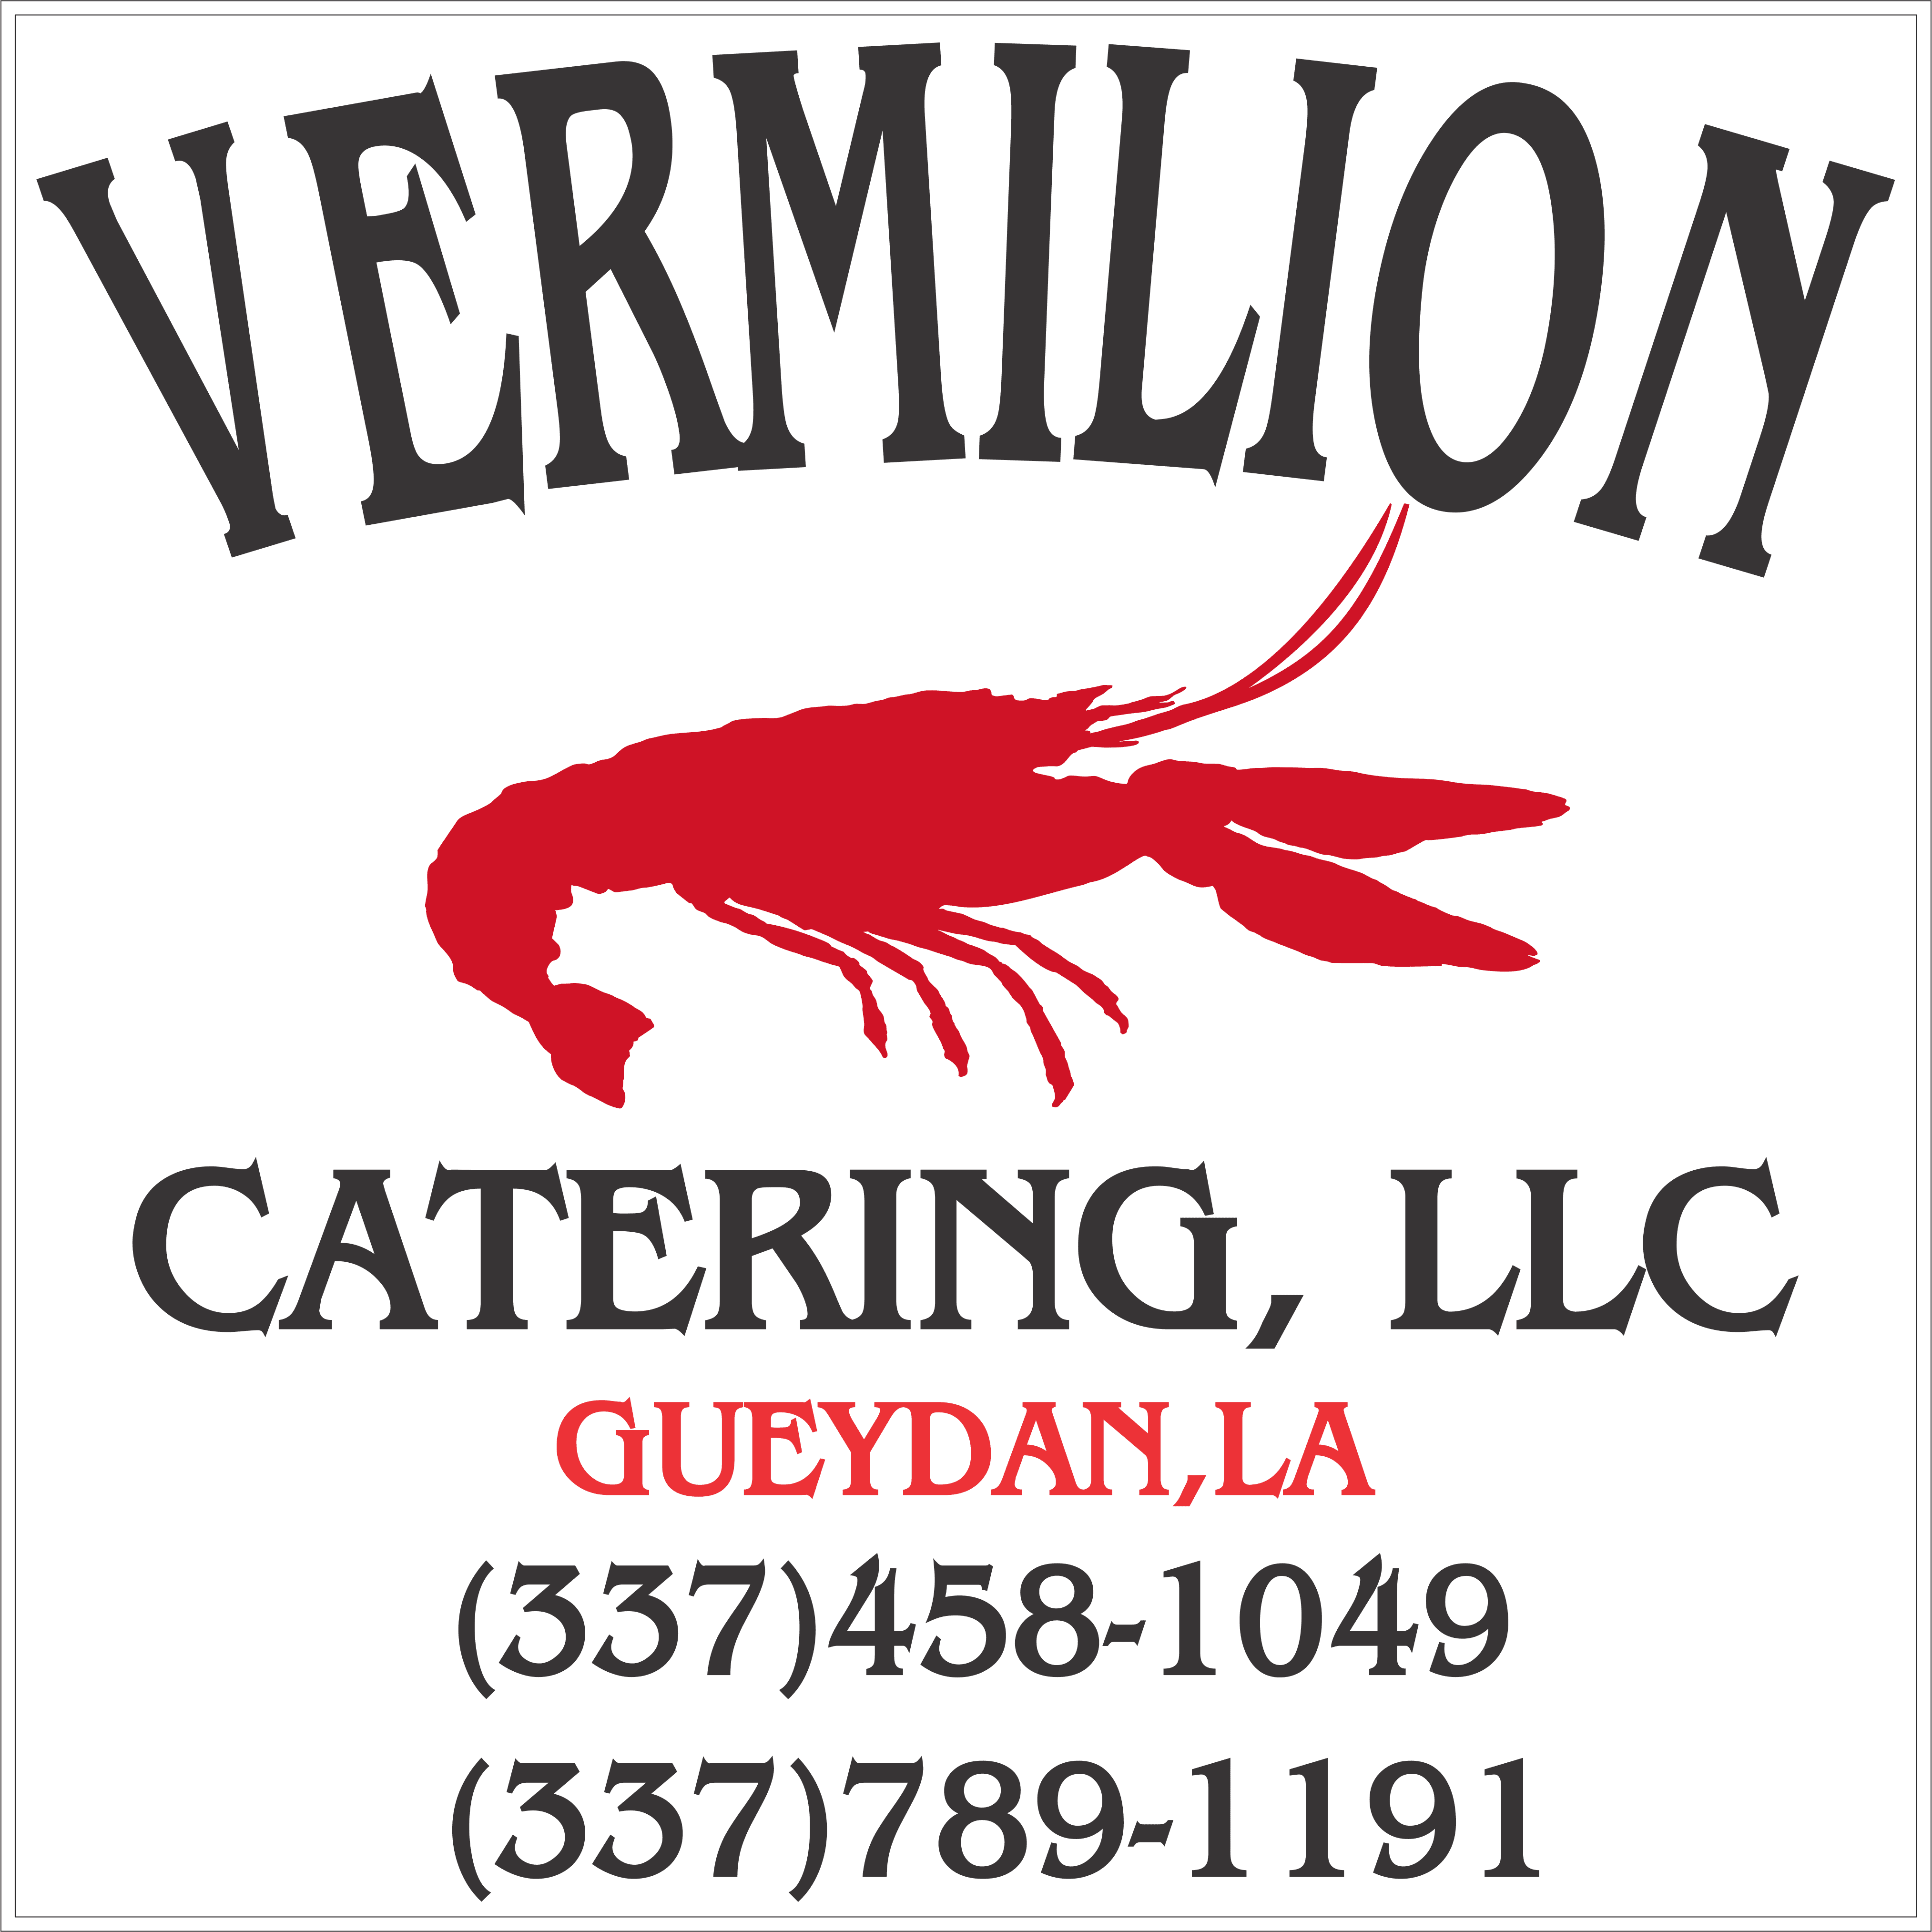 Vermilion Catering